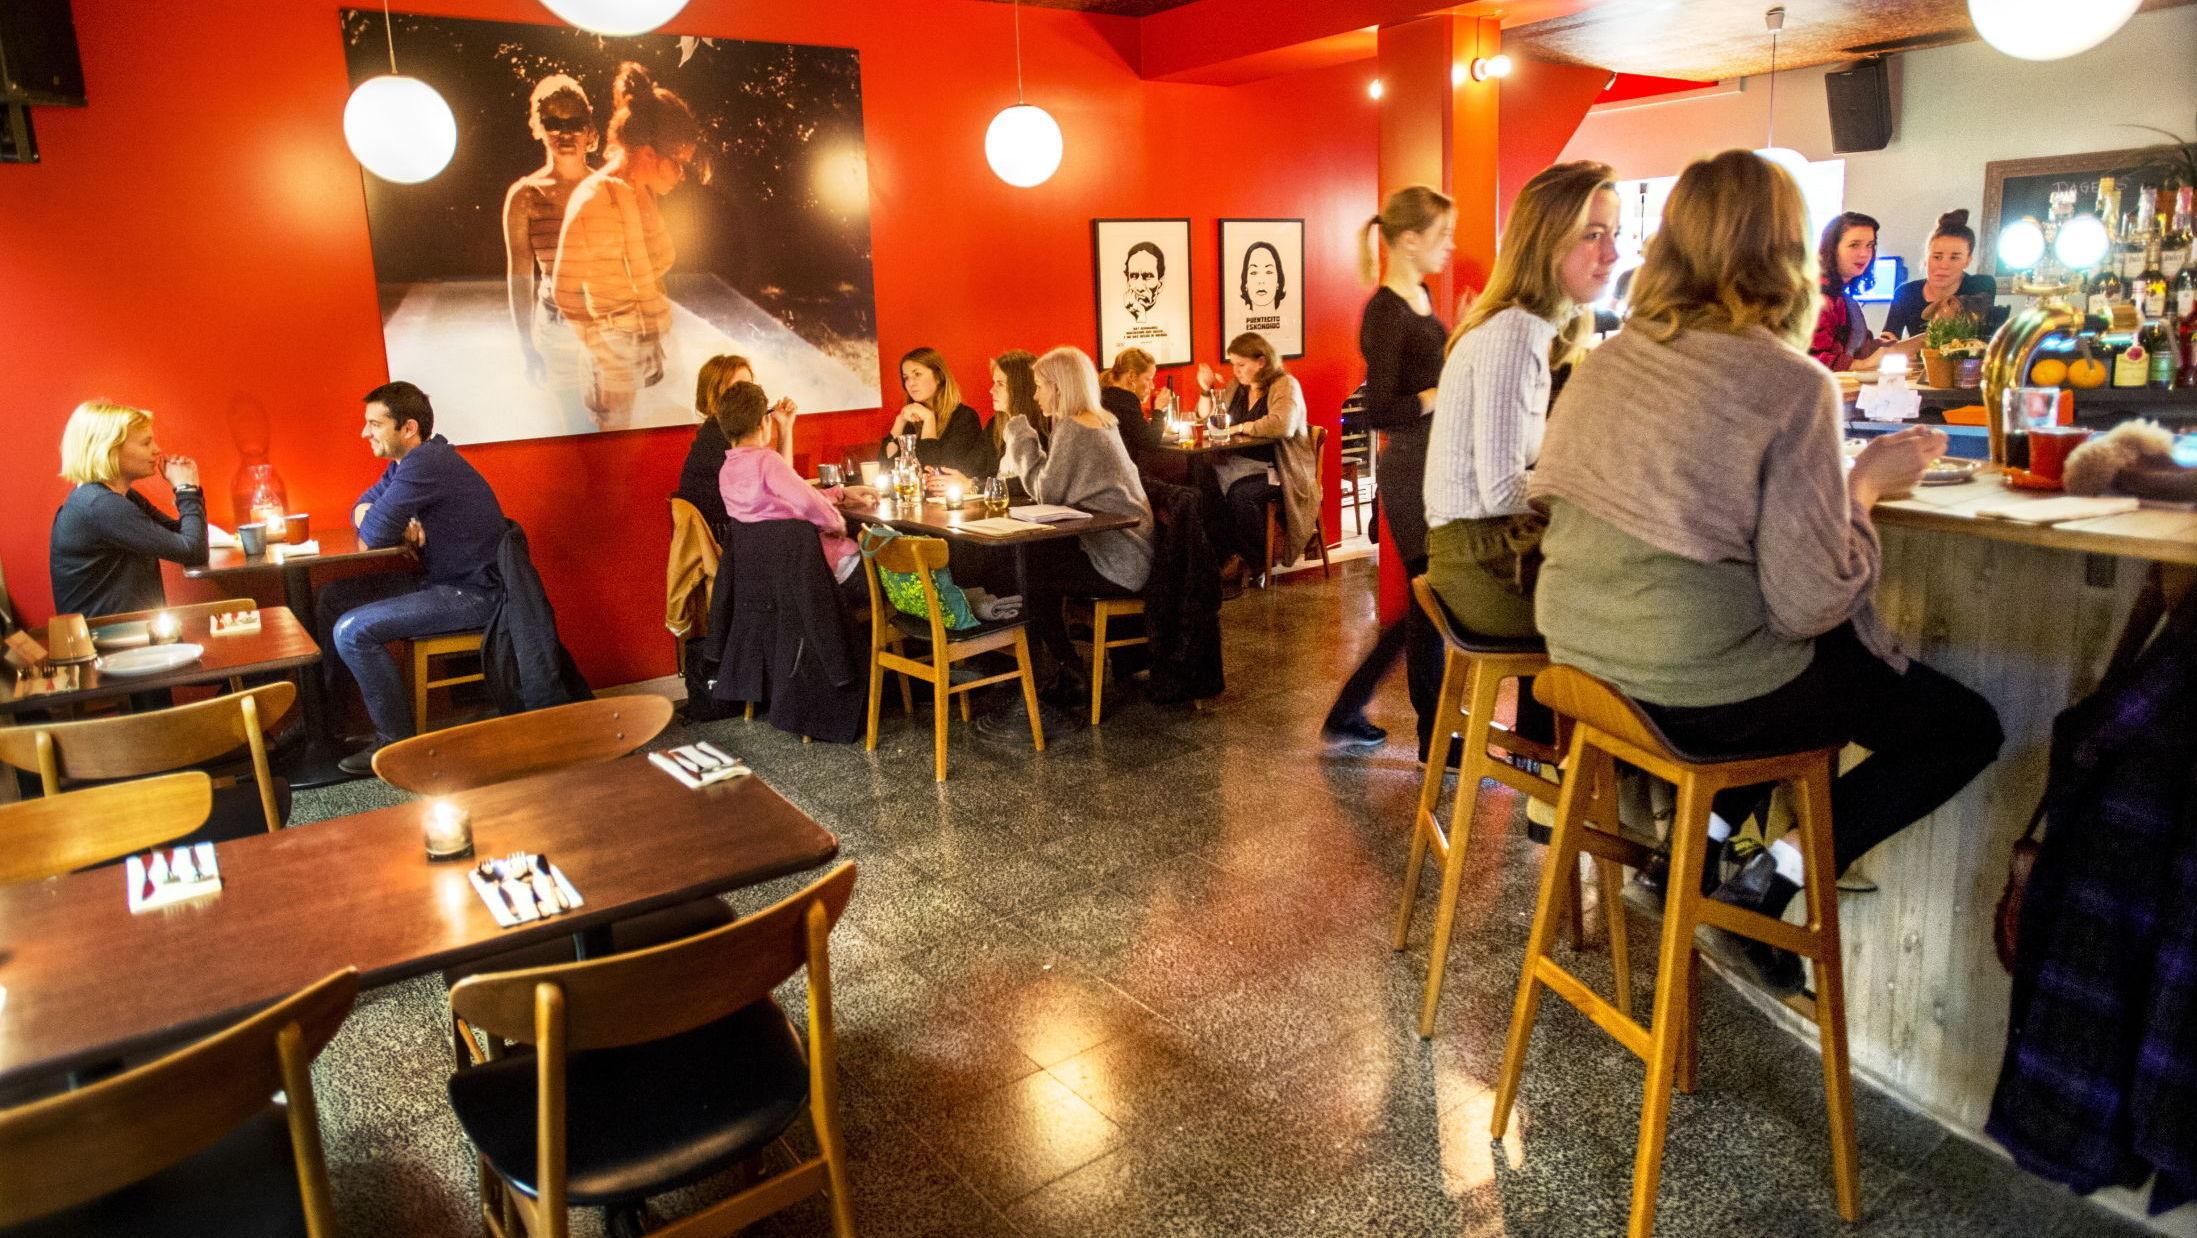 TEPPEFALL: Piscoteket har servert peruanske retter i Badstugata siden 2014. Restauranten lukker dørene for godt den 6. oktober. Foto: Helge Mikalsen/VG.